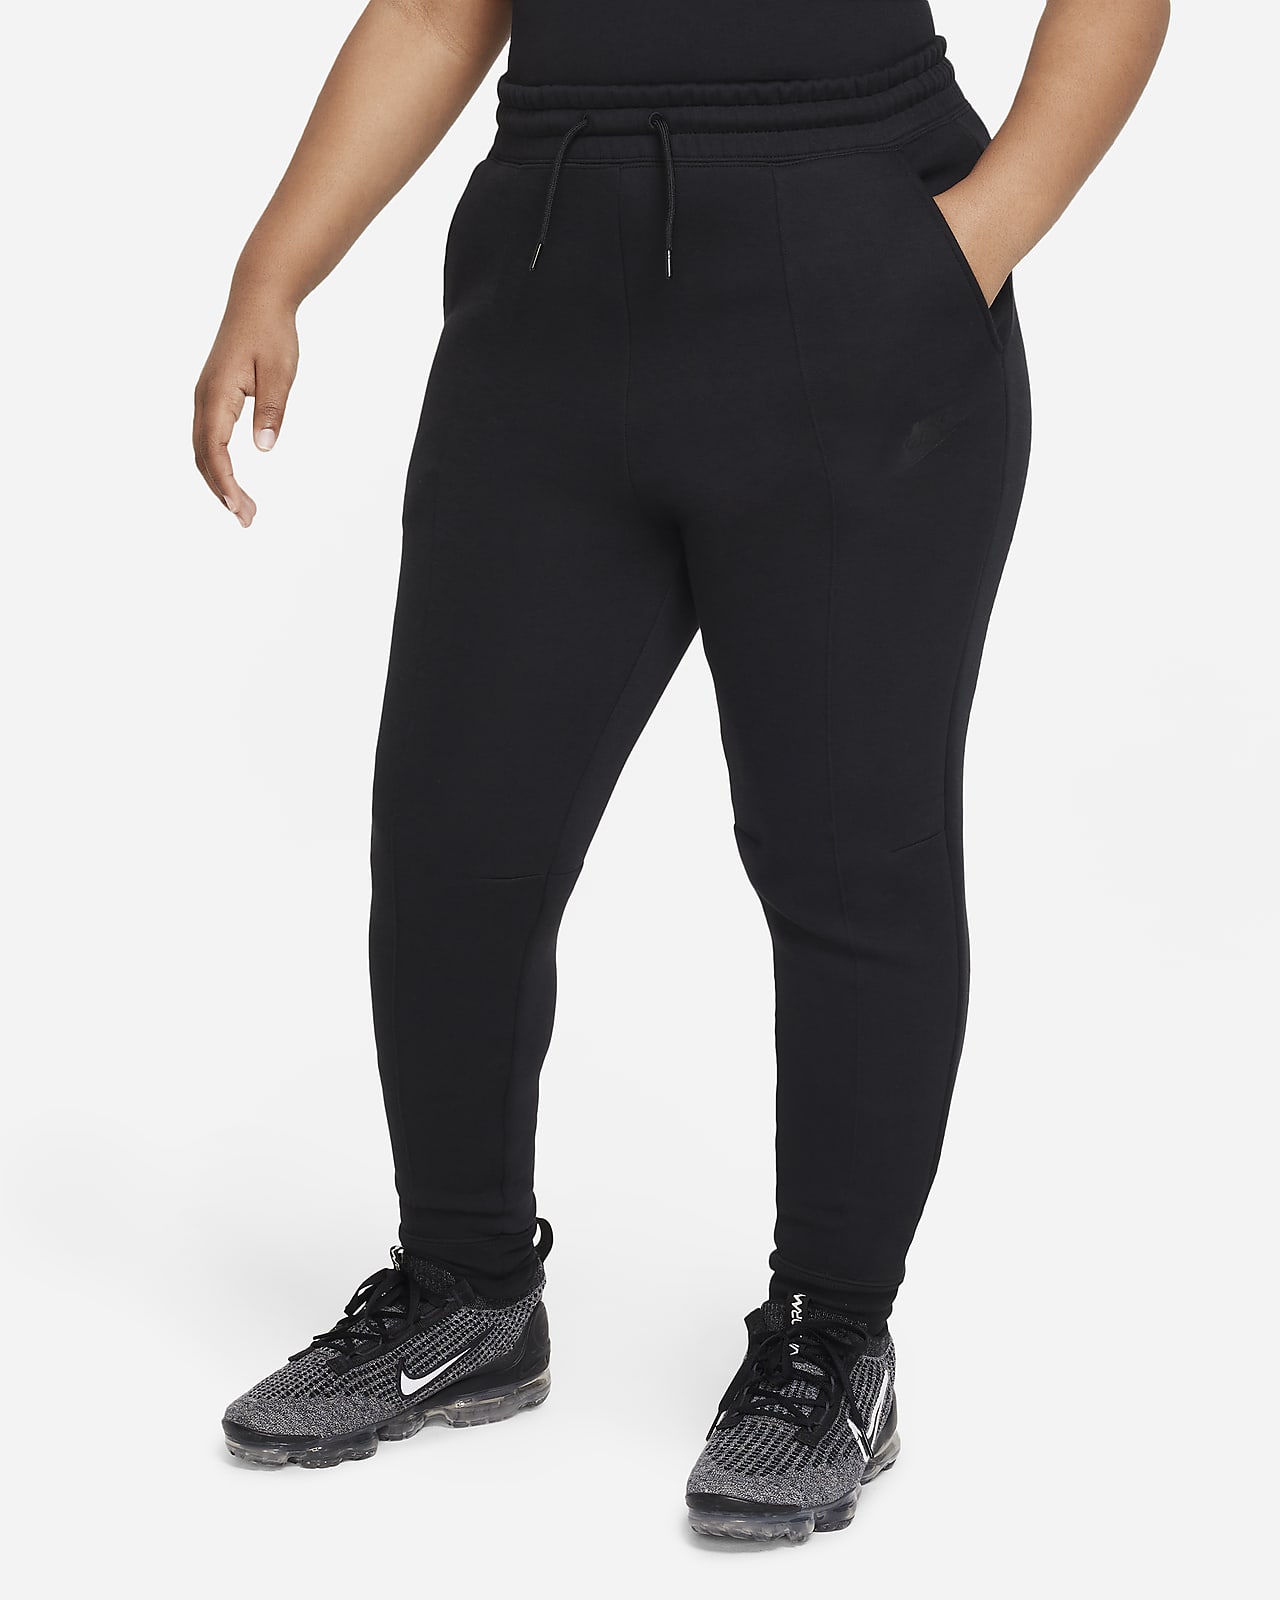 Women's Tech Fleece. Nike CA